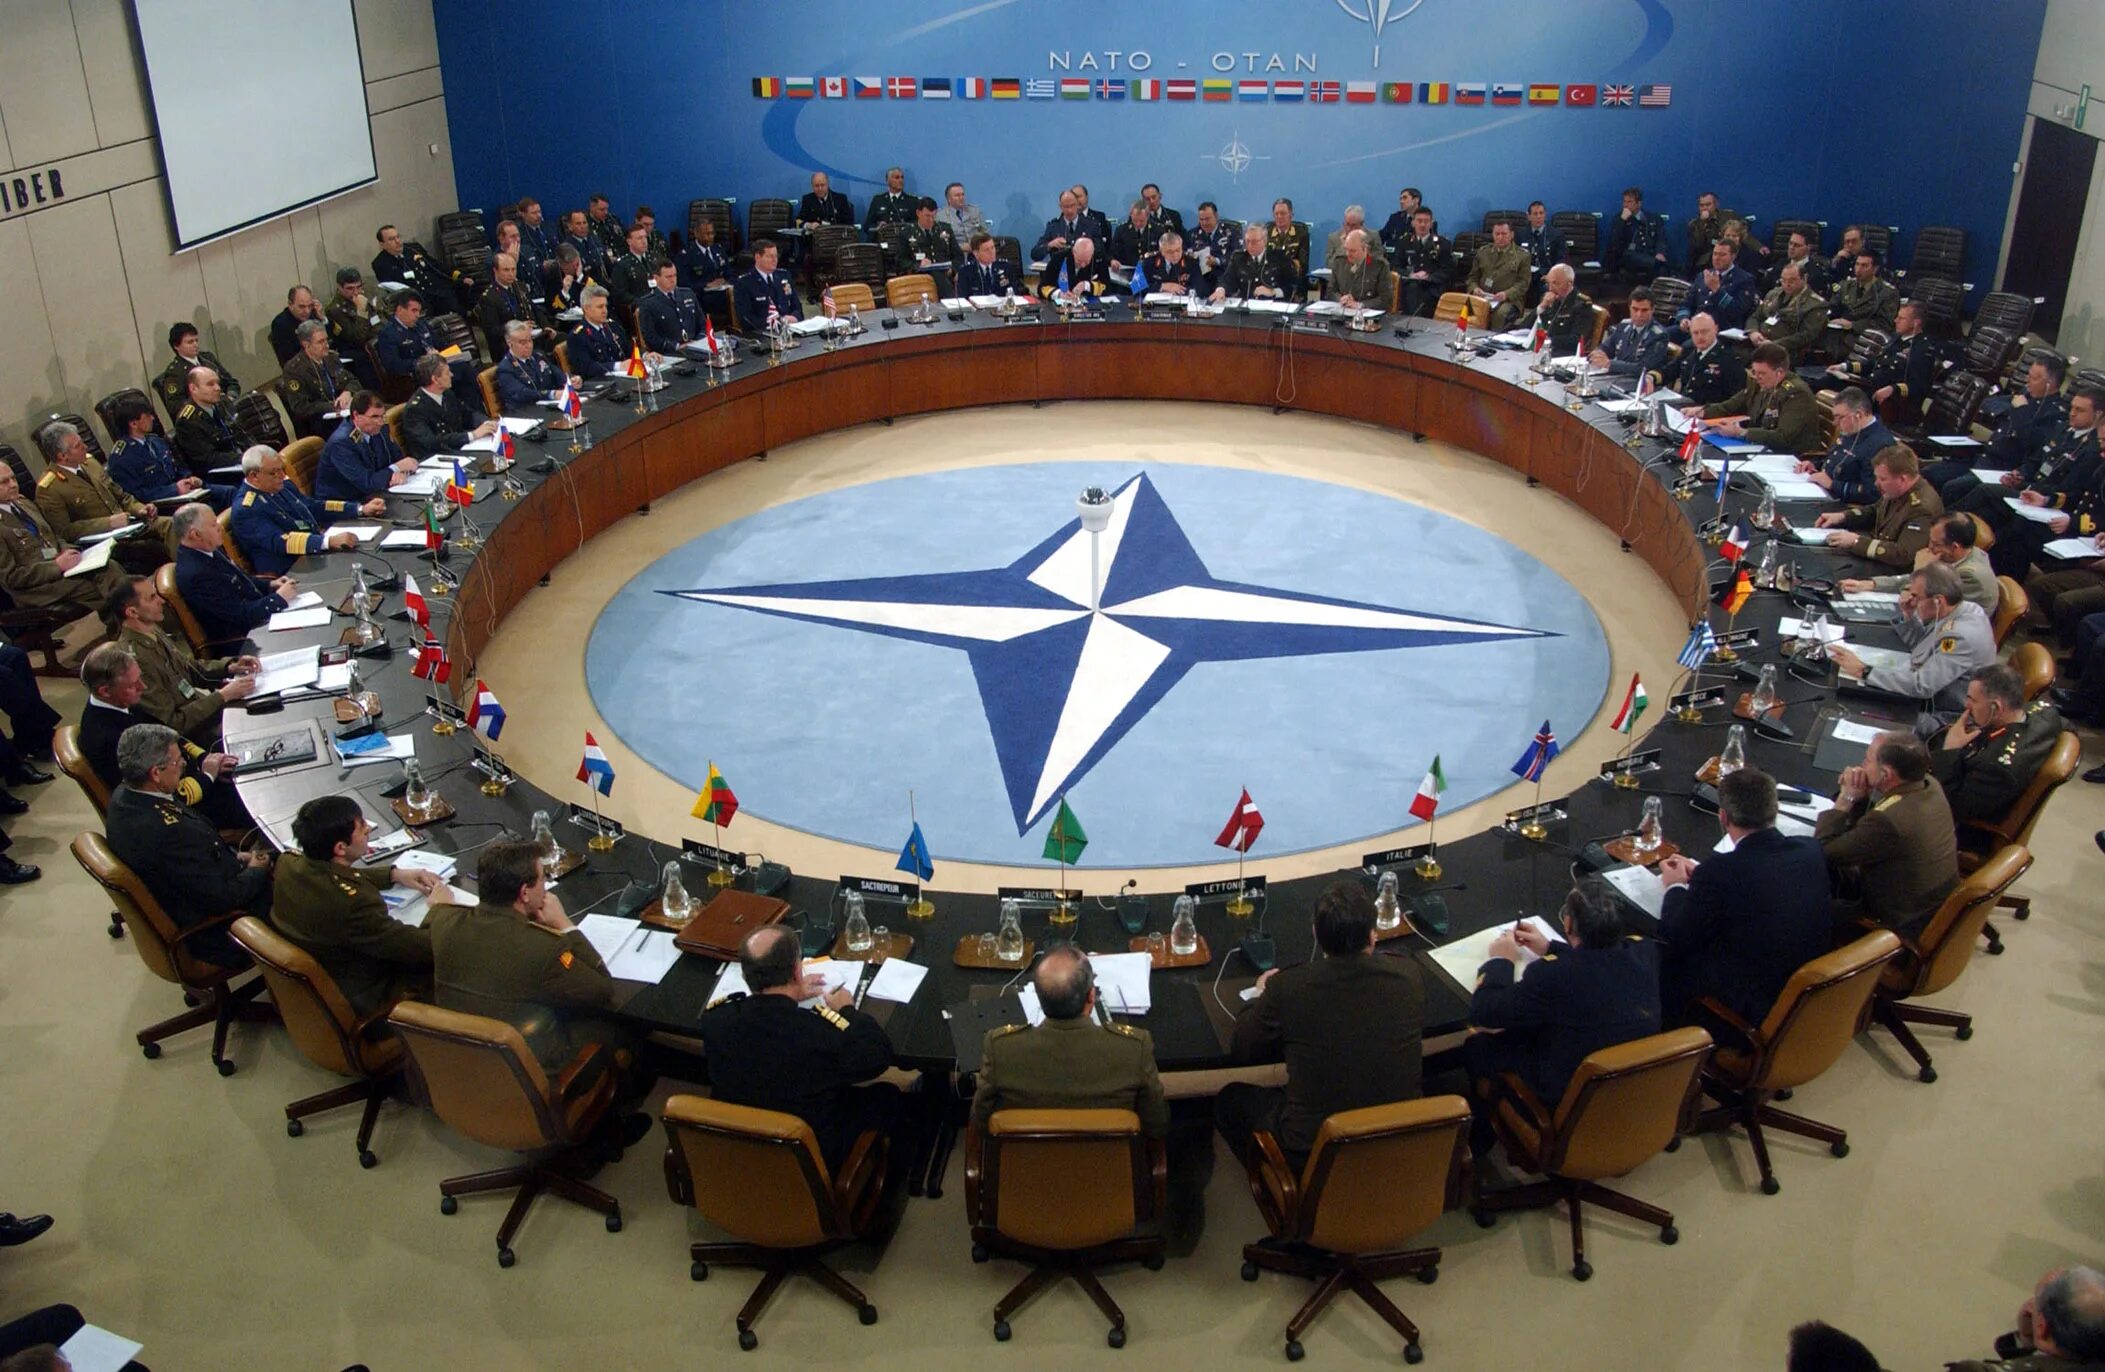 Комментарии нато. Североатлантический Альянс НАТО. НАТО North Atlantic Treaty Organization. Саммит НАТО В Мадриде. Образование Североатлантического Союза НАТО.